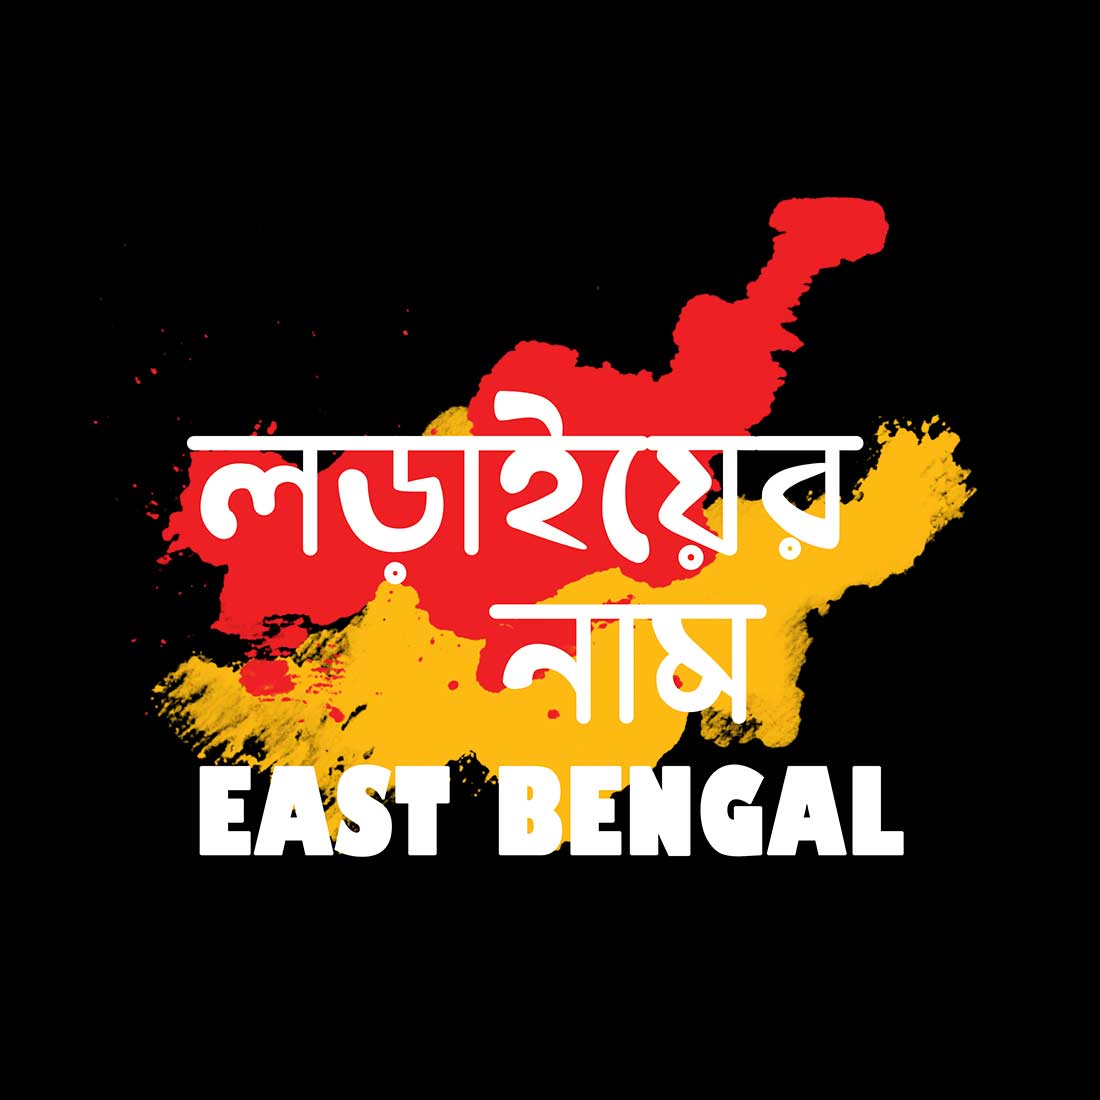 Lorai Er Name East Bengal Black Men T-Shirt